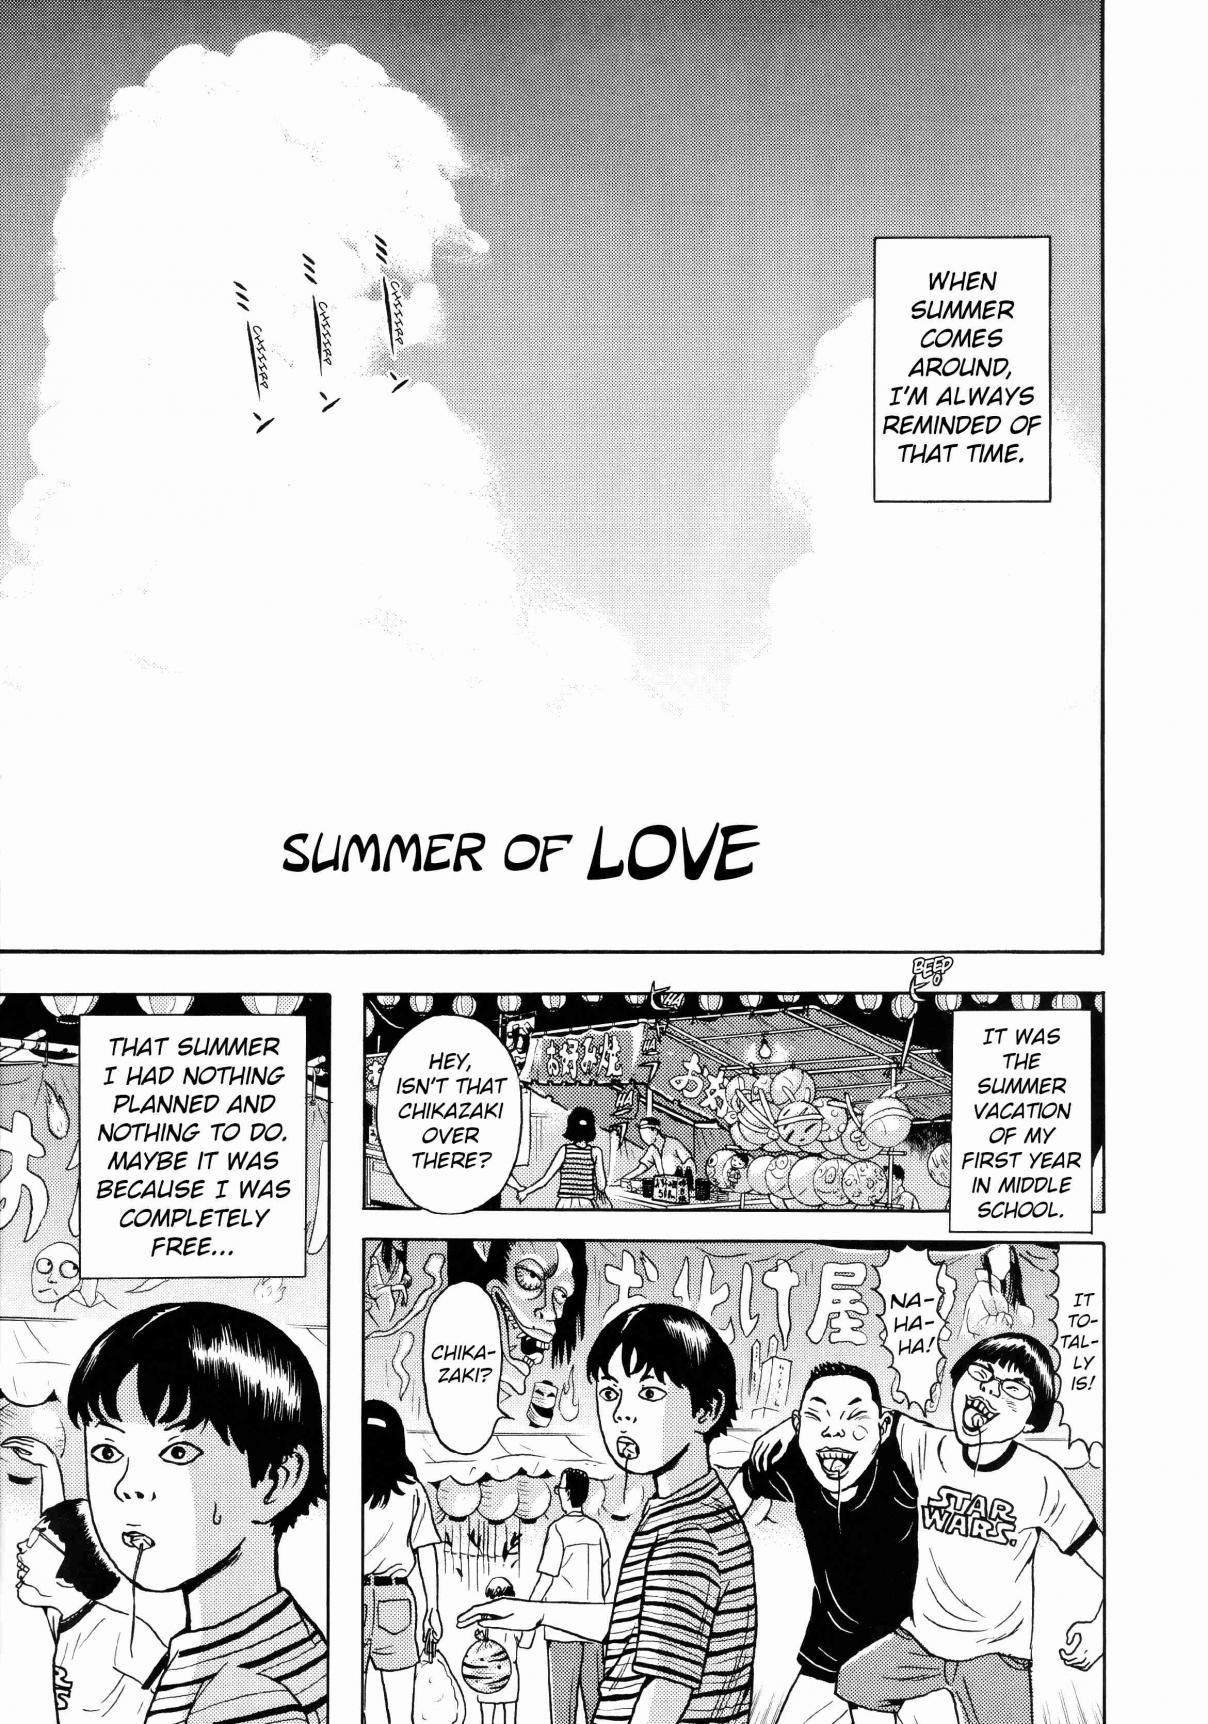 Zutto Saki no Hanashi Vol. 1 Ch. 7 The Summer of Love